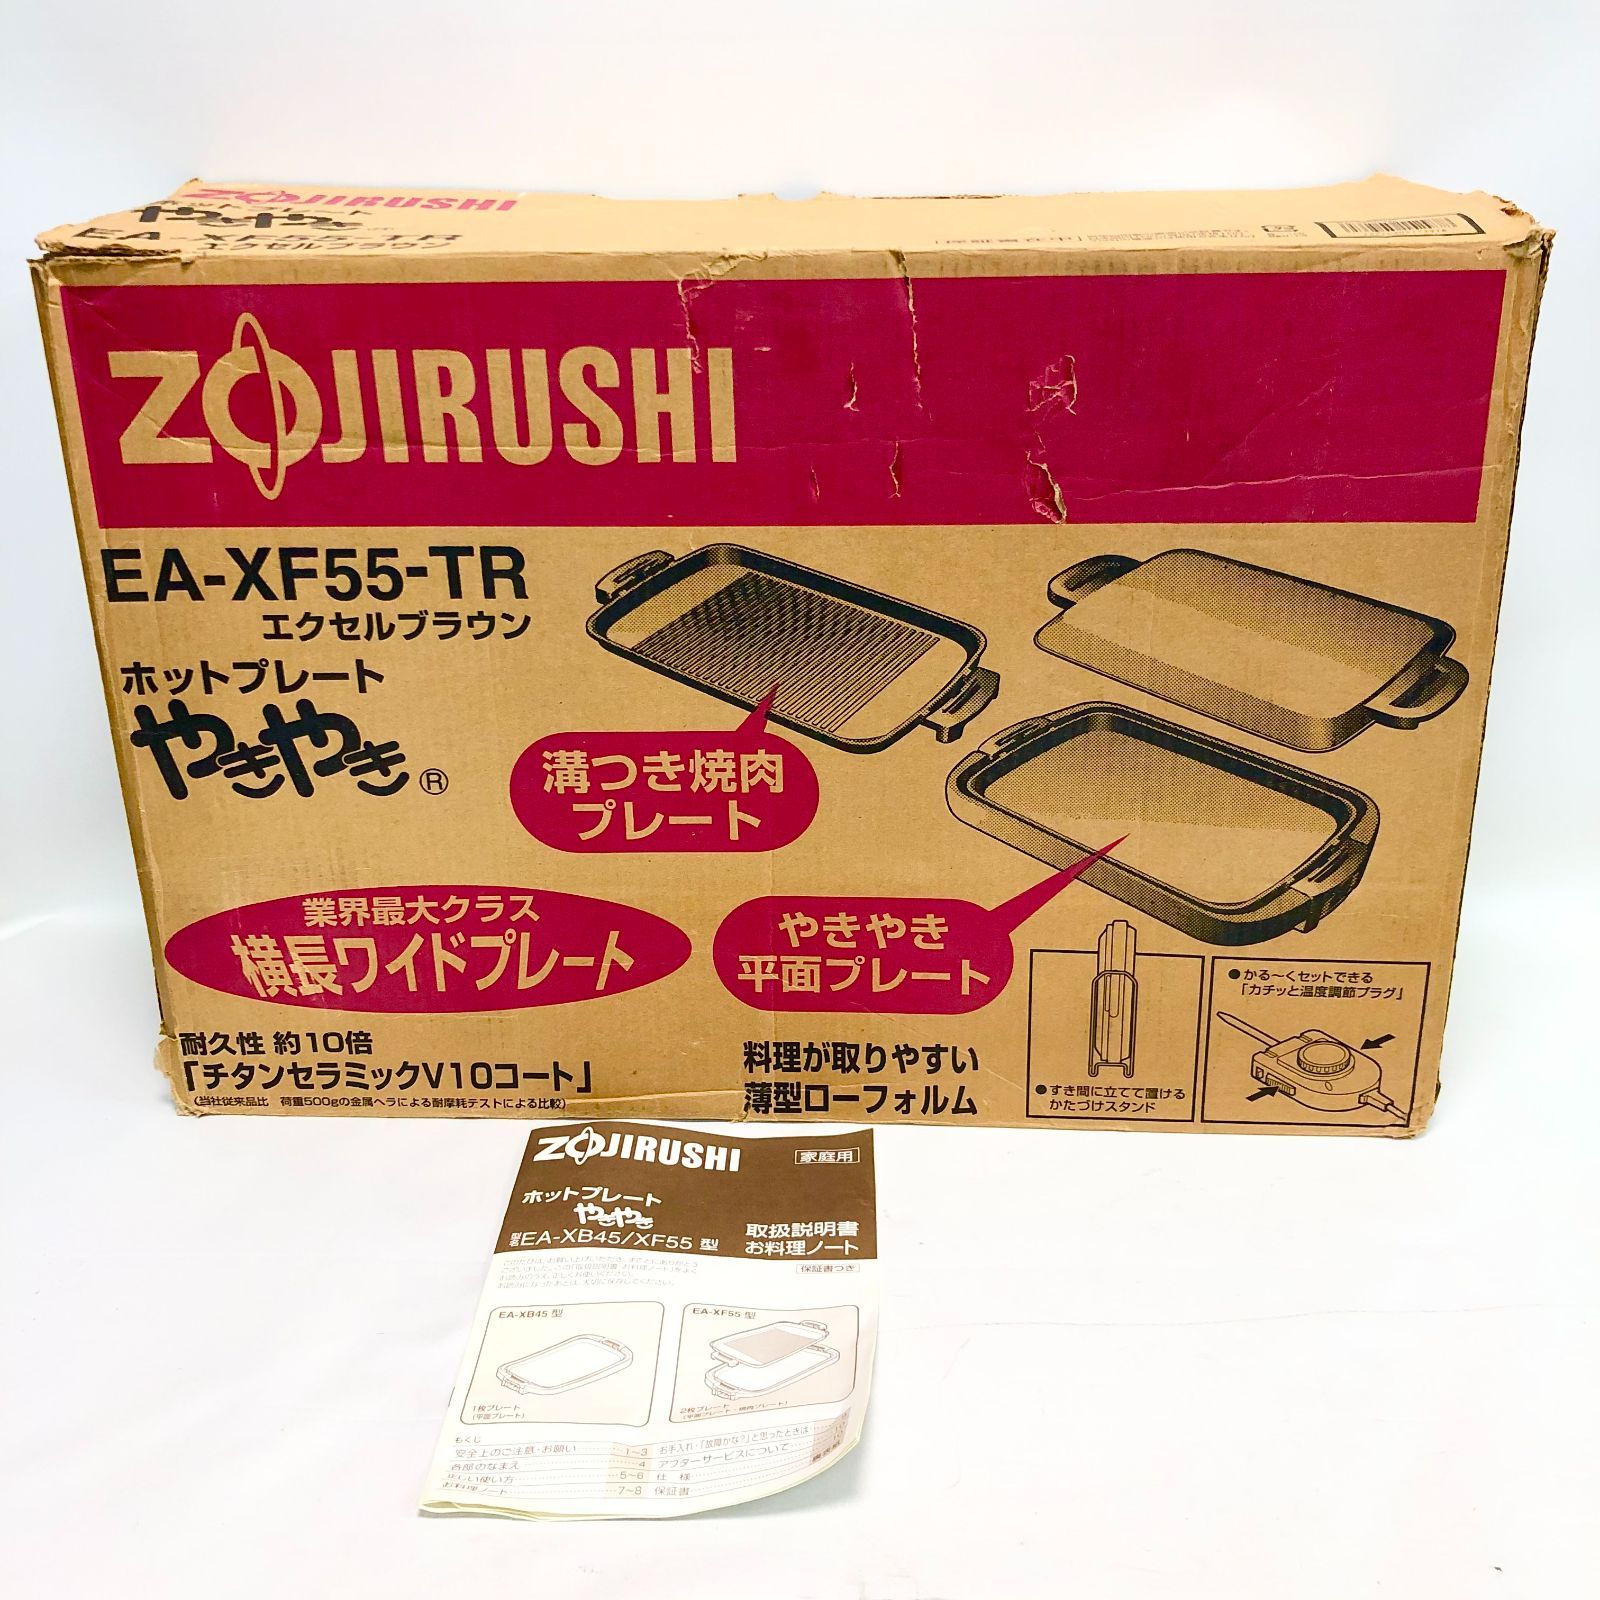 ZOJIRUSHI ホットプレート やきやき EA-XF55-TR 象印 外箱に傷あり - メルカリ